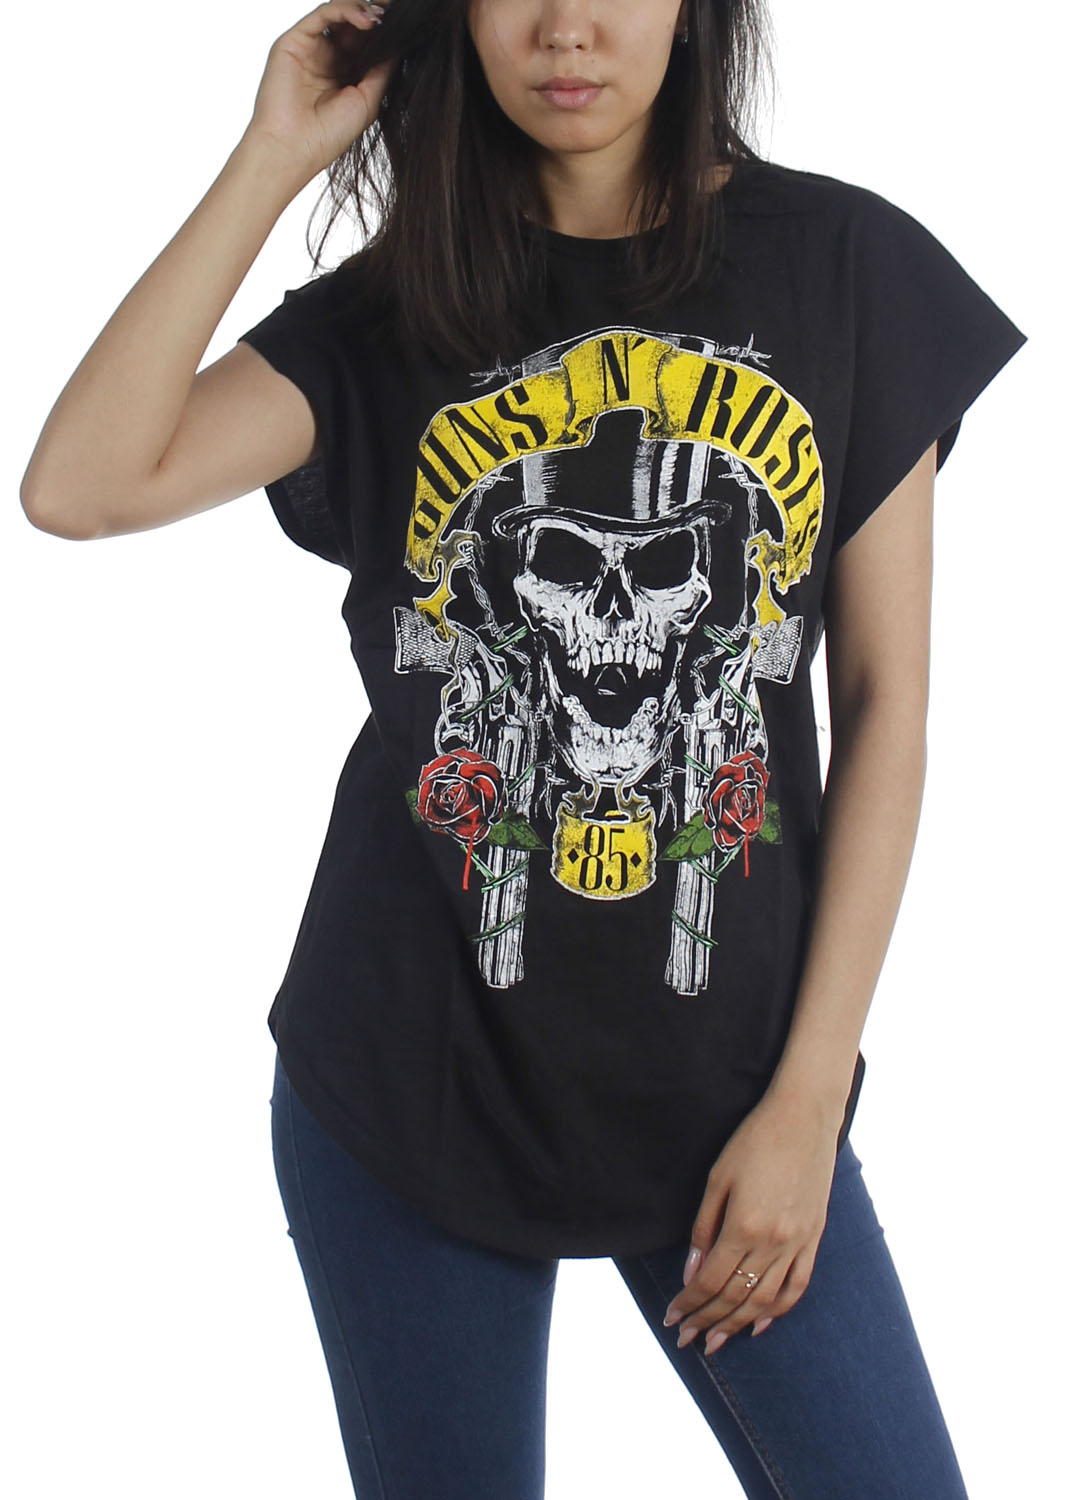 Guns N/' Roses Snakes /& Skulls 2012 Tour T-Shirt